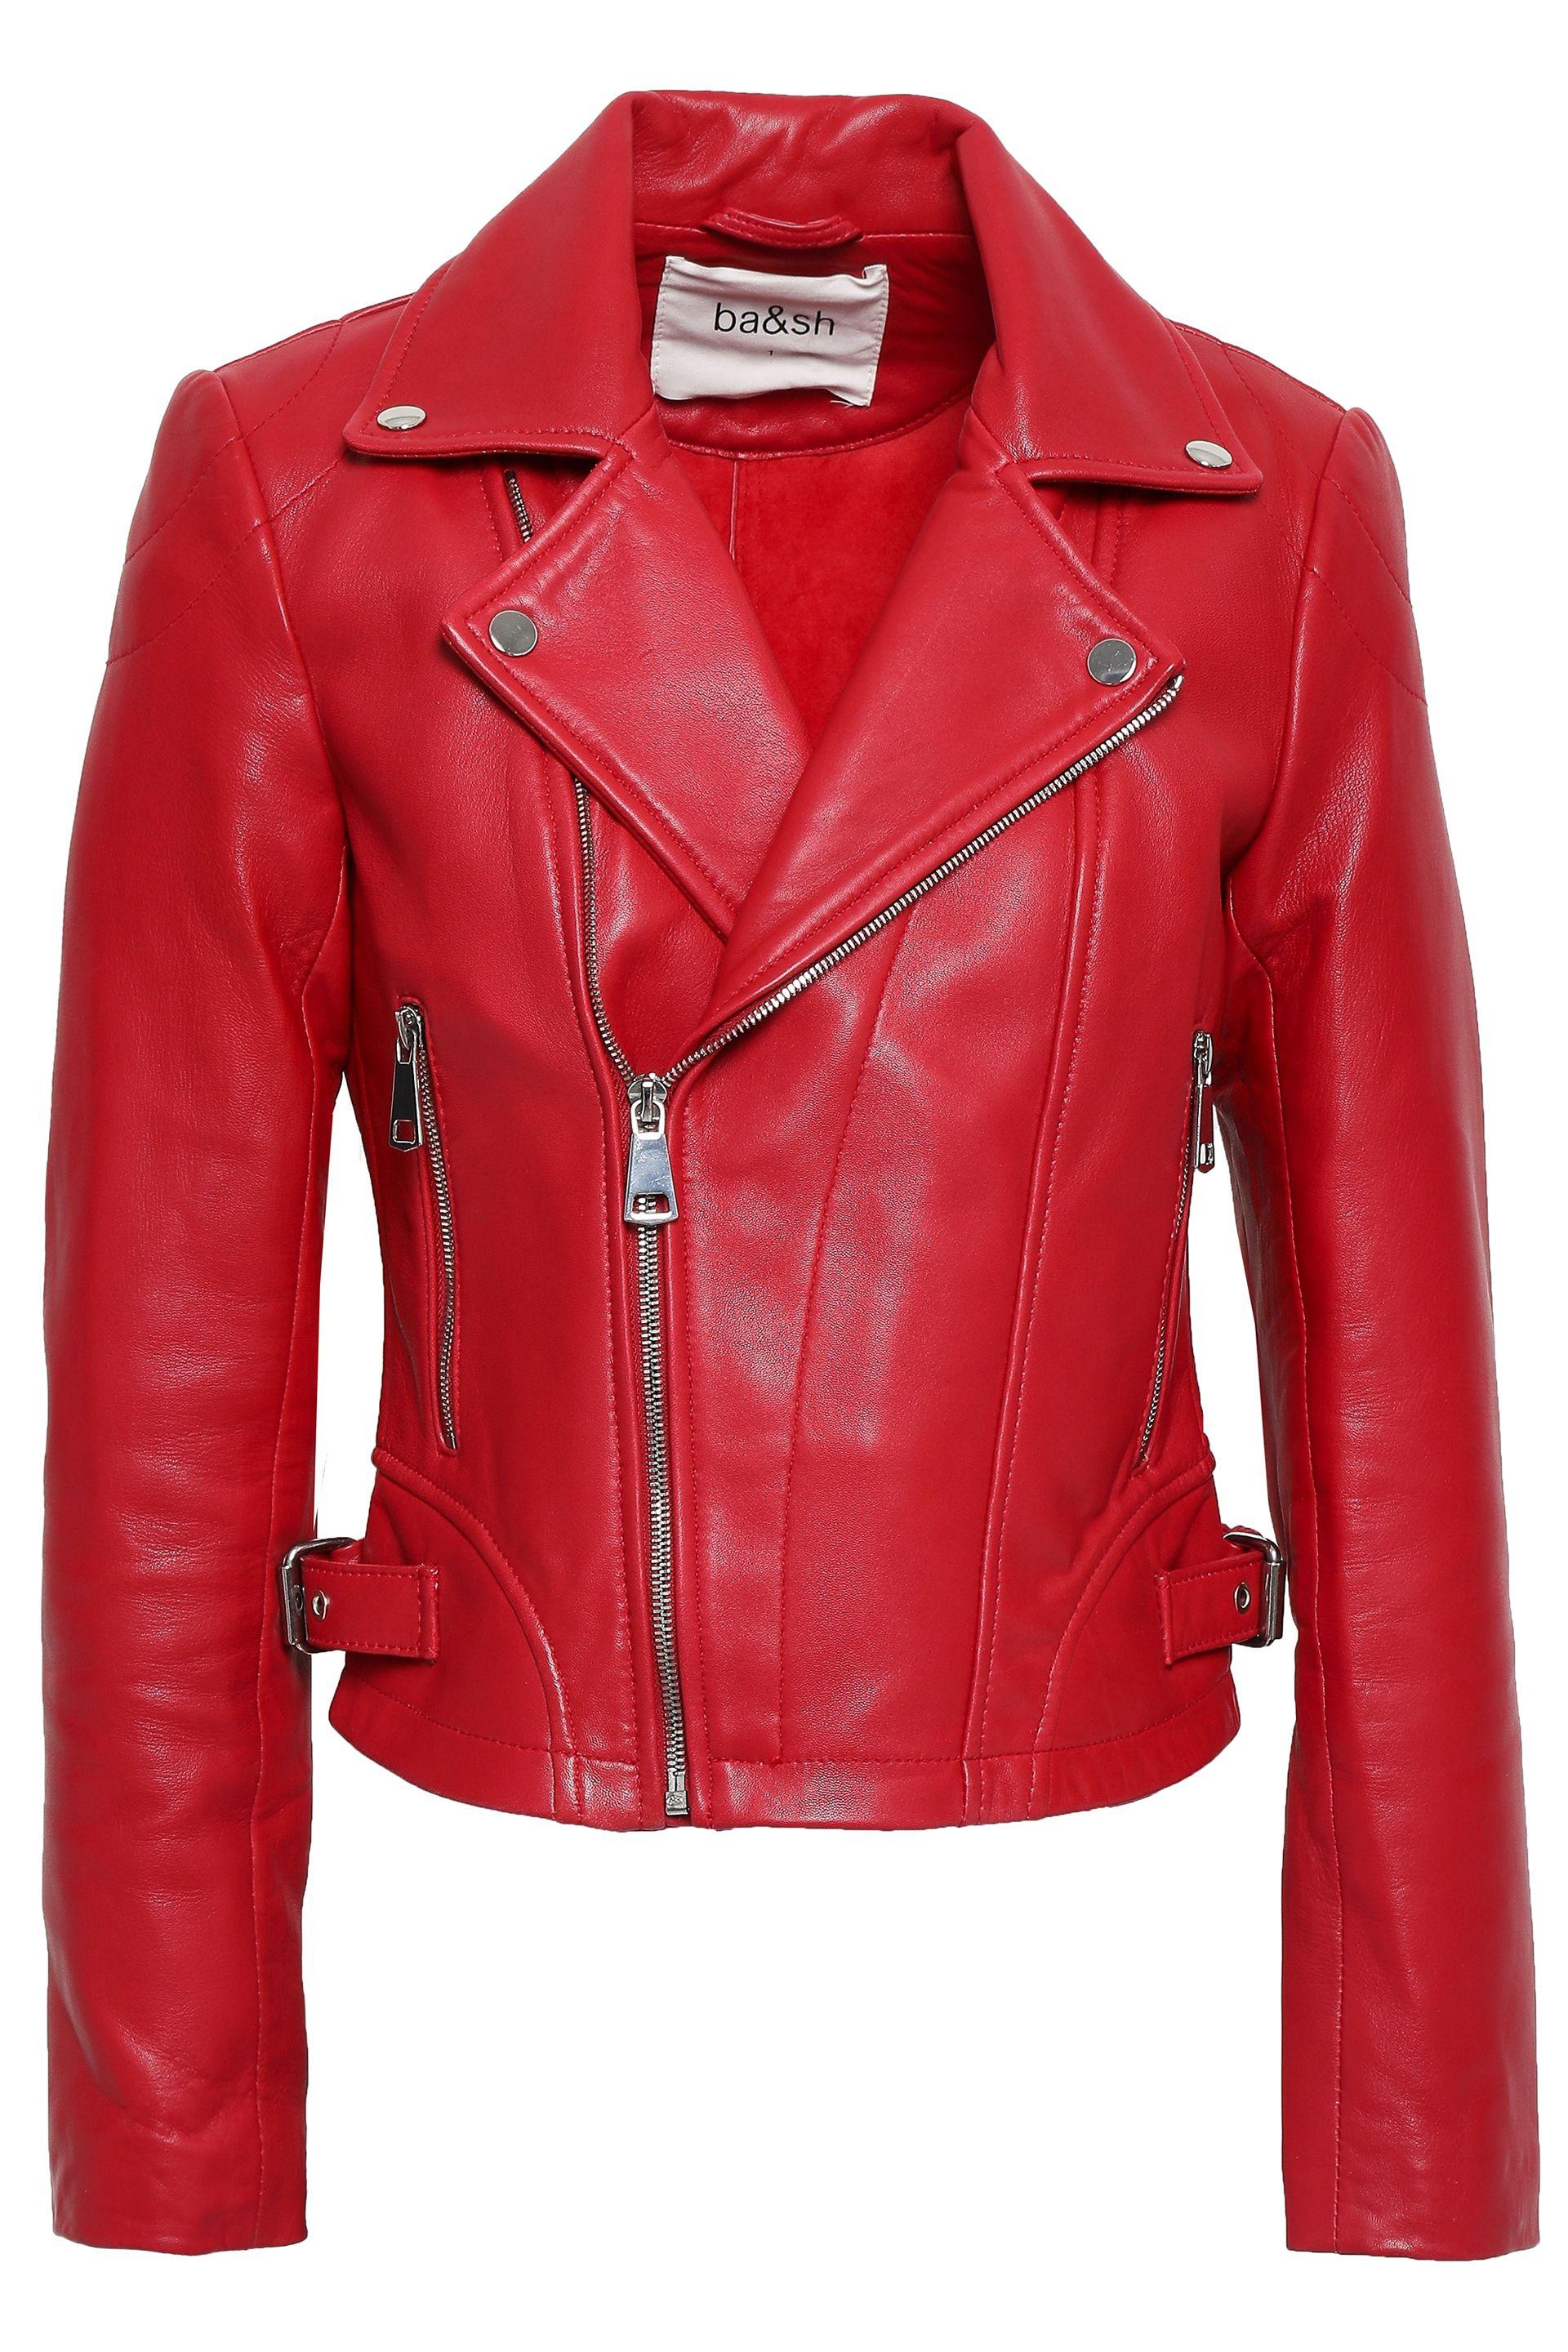 Ba&sh Leather Biker Jacket Red - Lyst